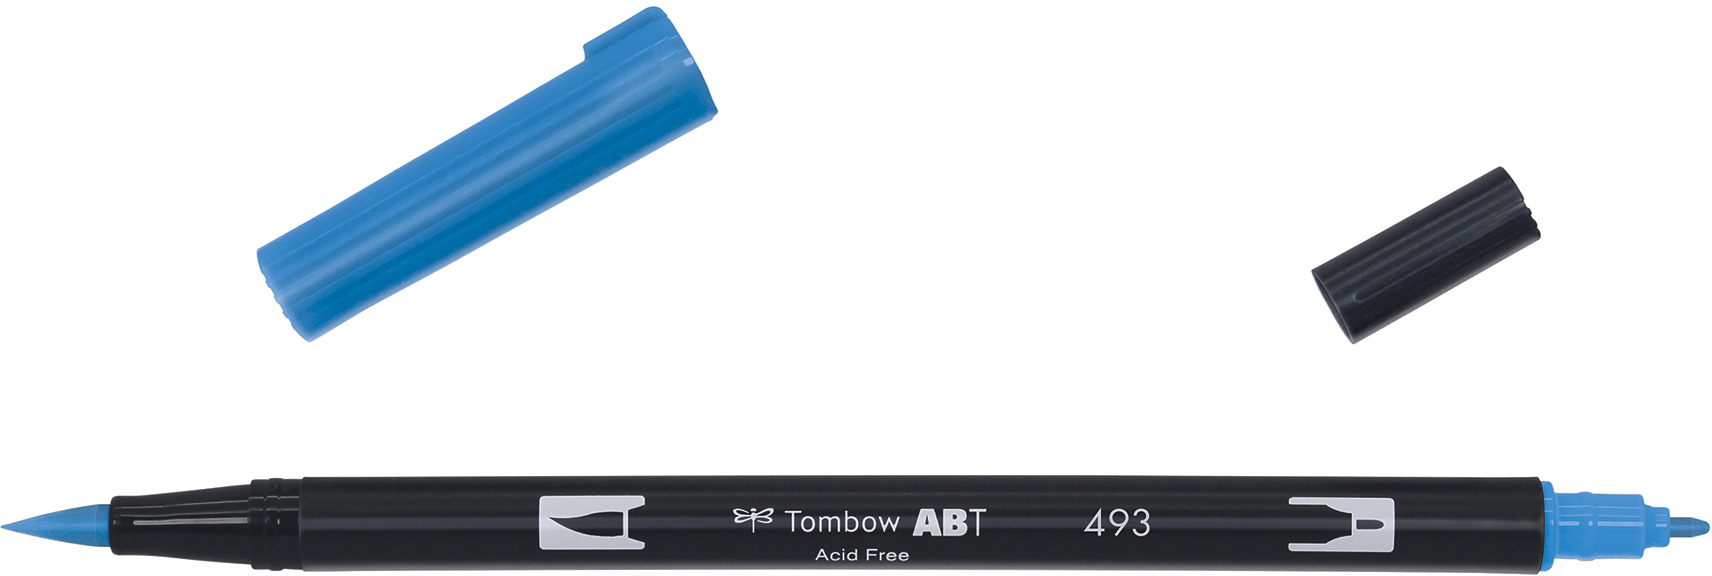 TOMBOW Dual Brush Pen ABT 493 reflex blue